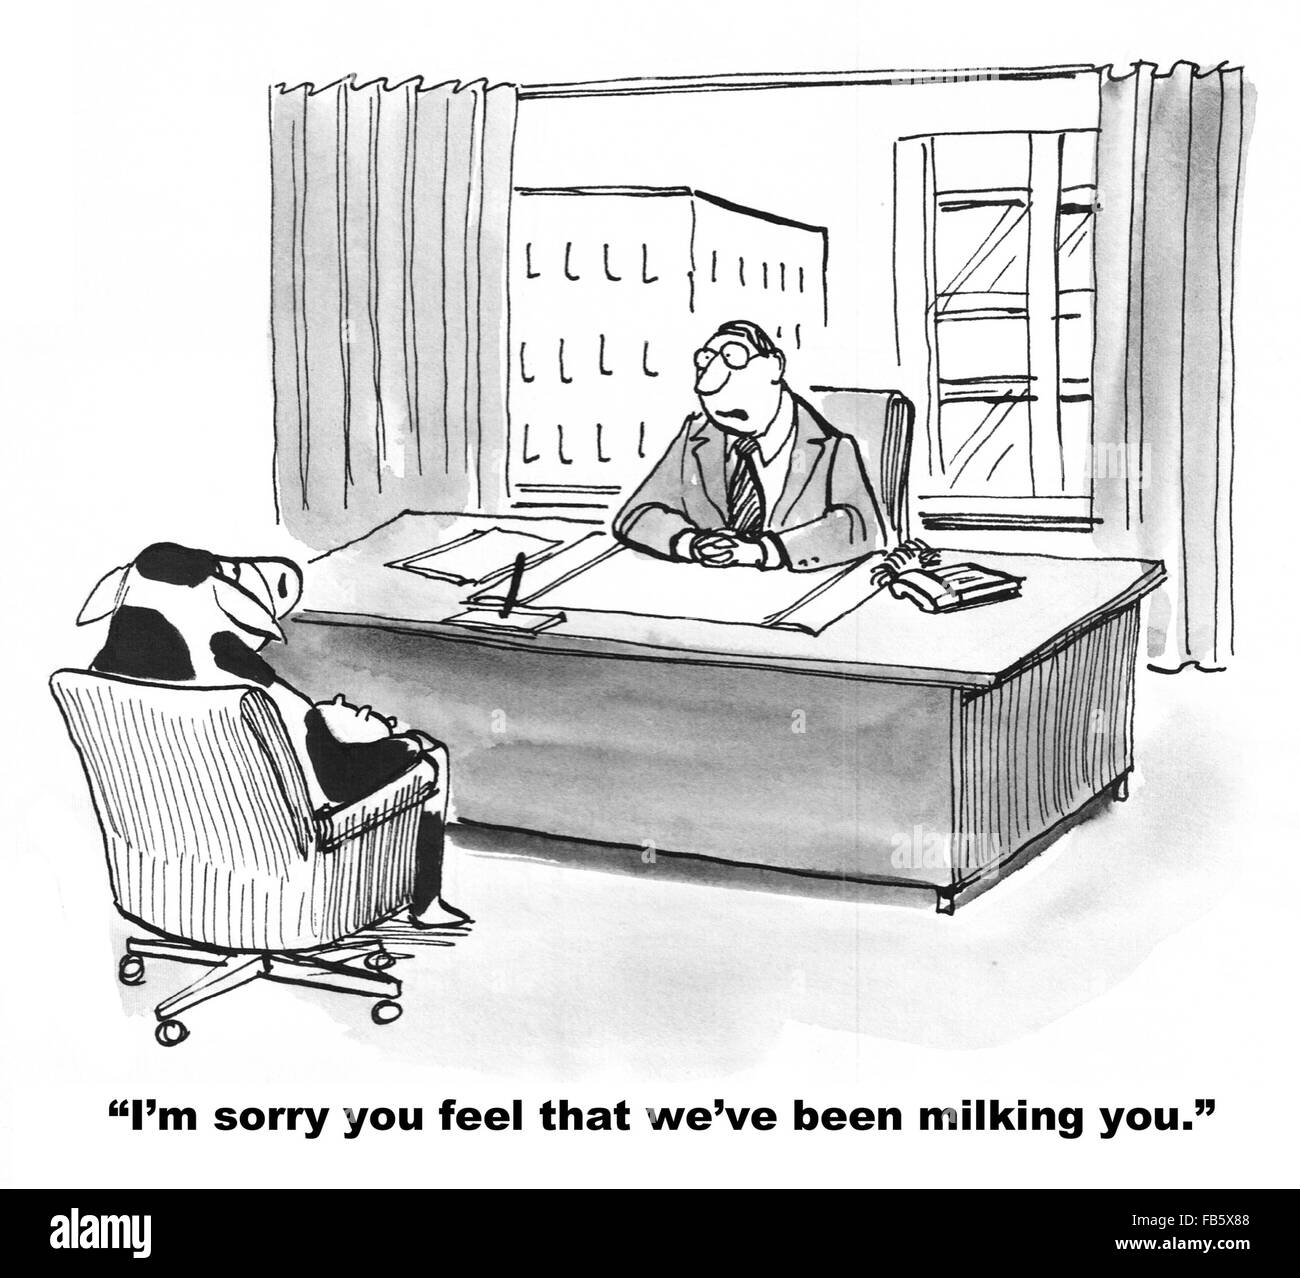 Geschäftliche Cartoon über Unternehmenskultur.  Die Business-Kuh fühlt, dass die Firma ihr verwendet. Stockfoto